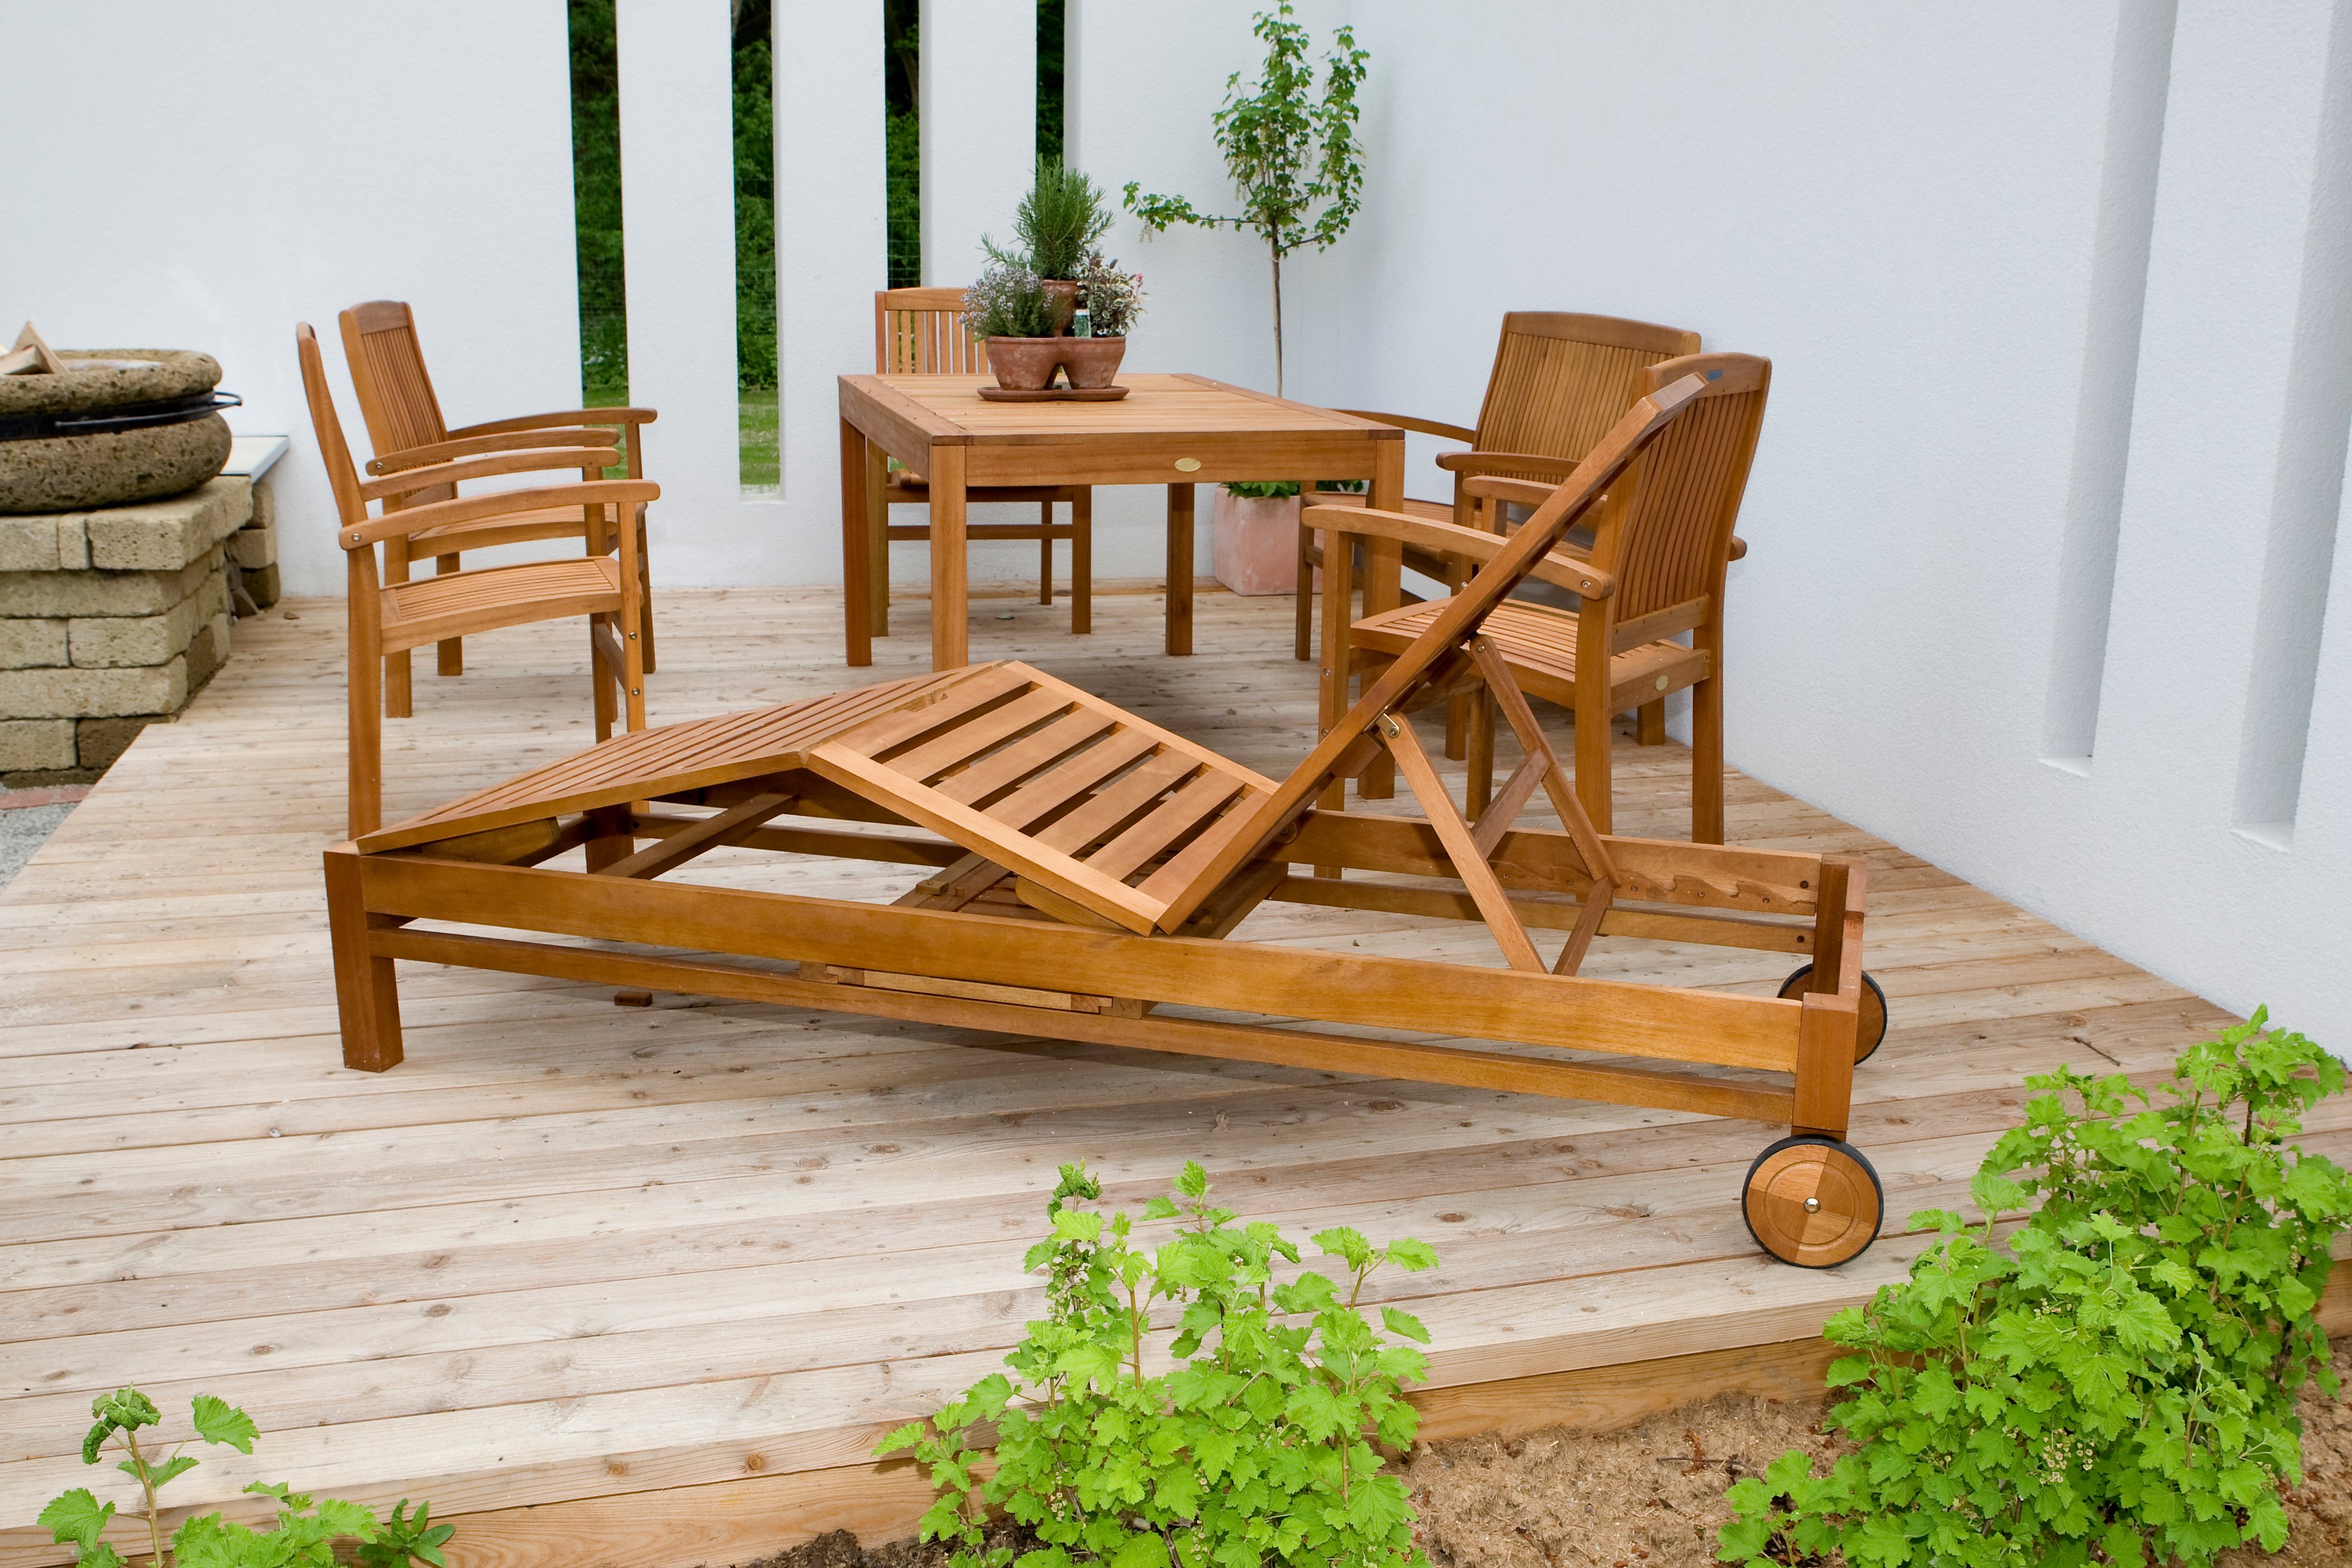 Eine Gartenliege aus Holz steht auf einer Terrasse. Im Hintergrund befinden sich passende Gartenstühle und ein Gartentsich.